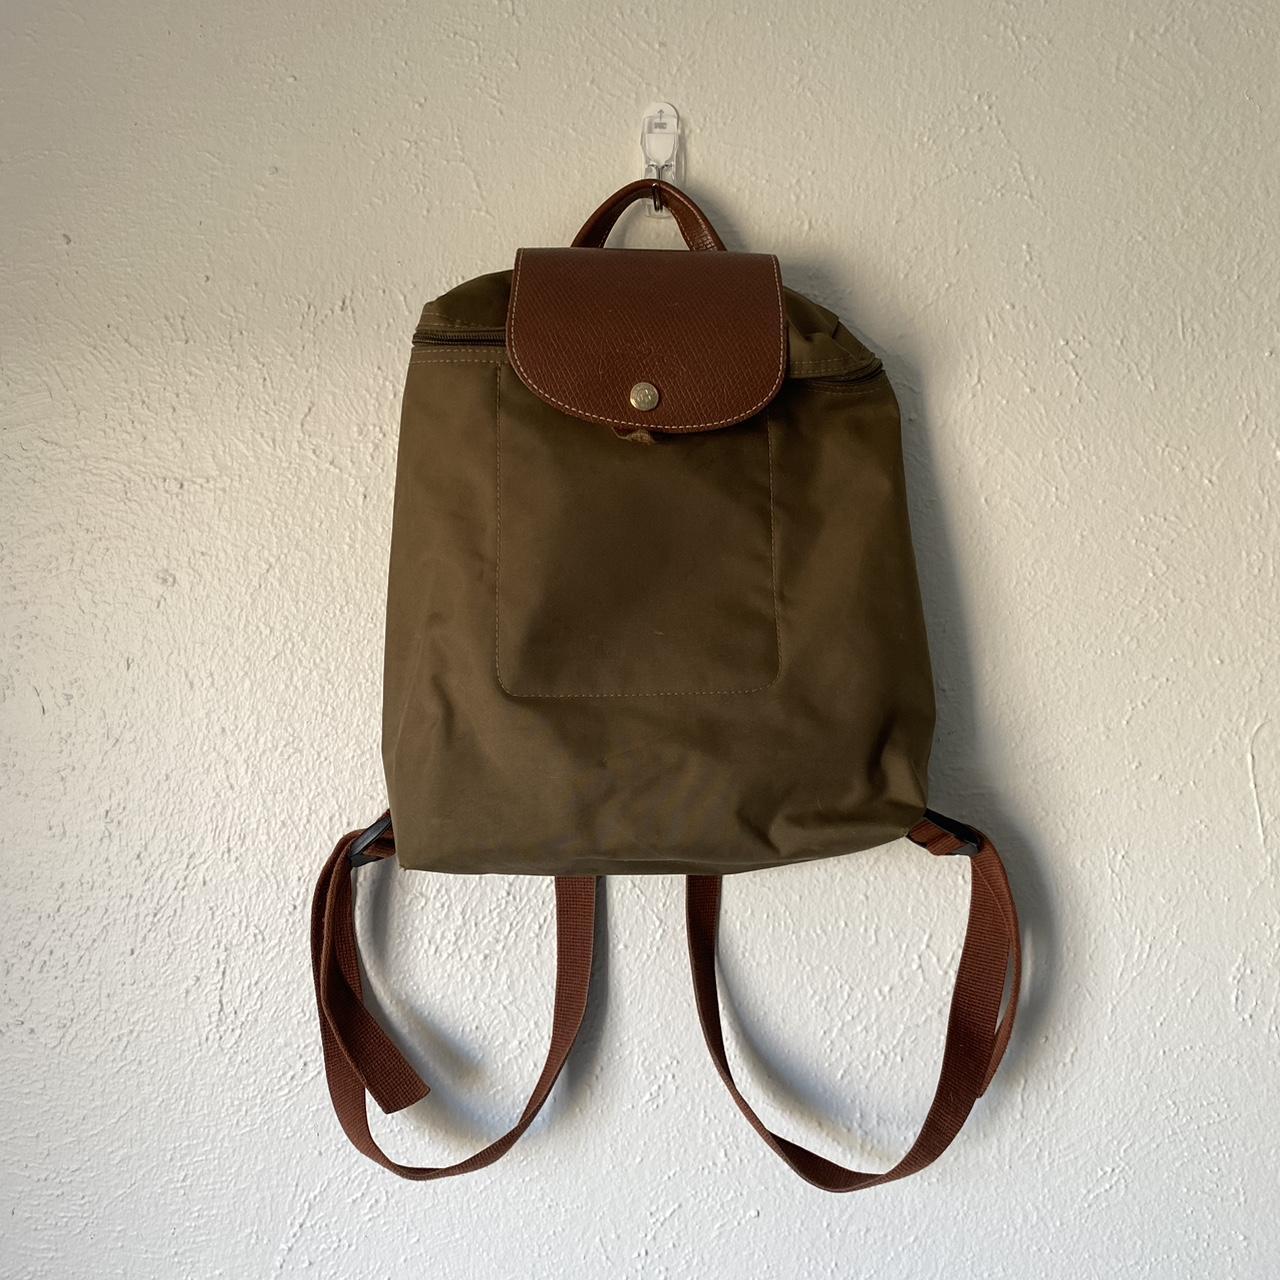 Olive Green & Brown Longchamp backpack - Depop